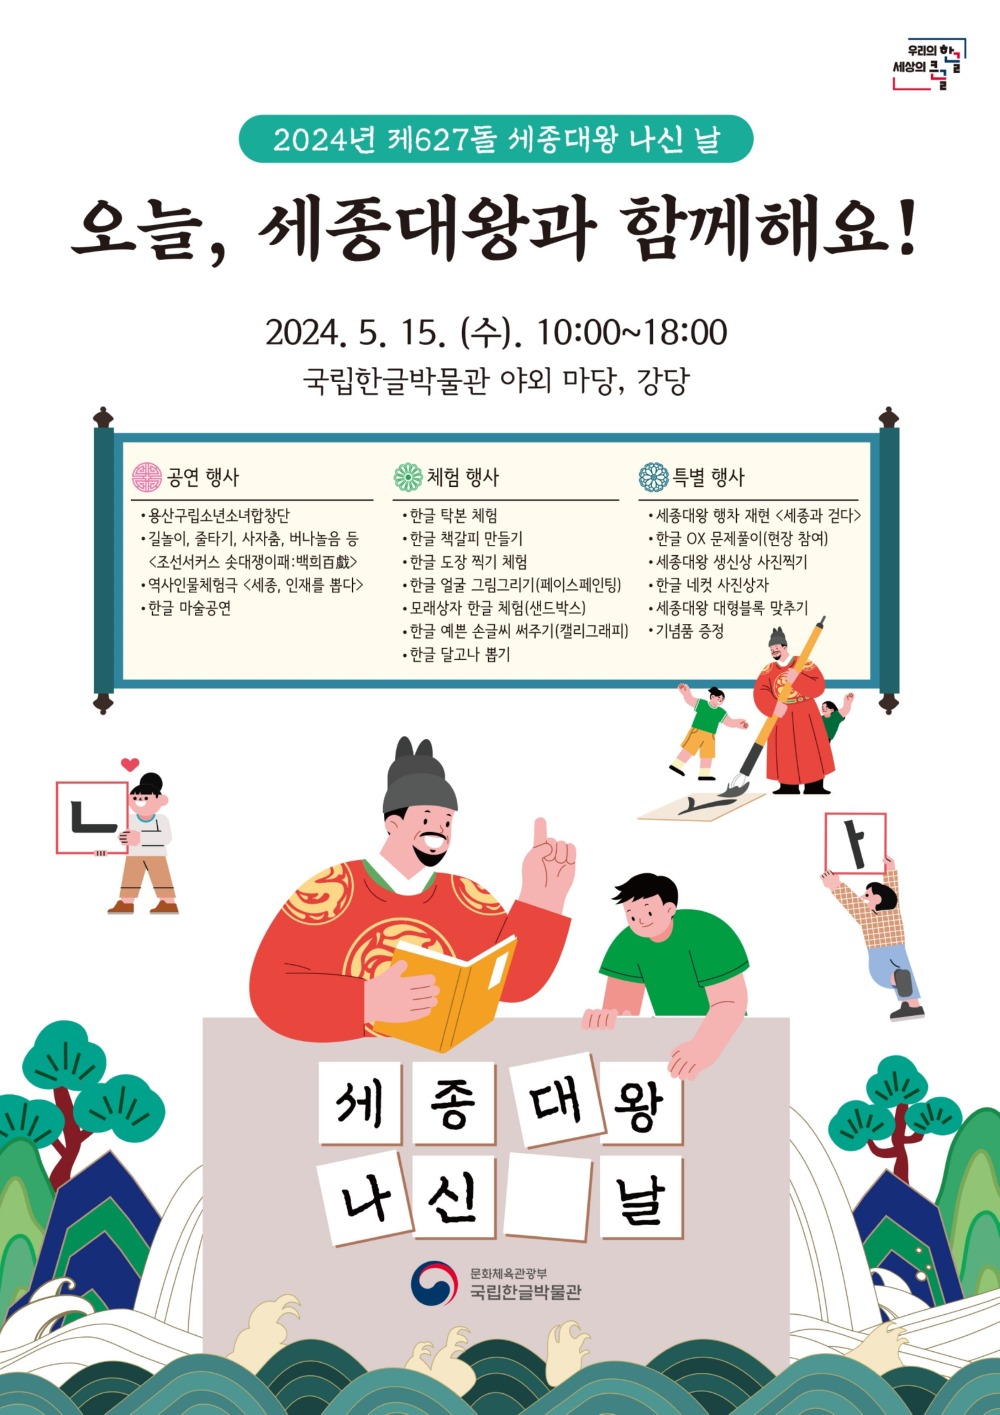 '세종대왕 나신날' 행사 포스터(국립한글박물관 제공)